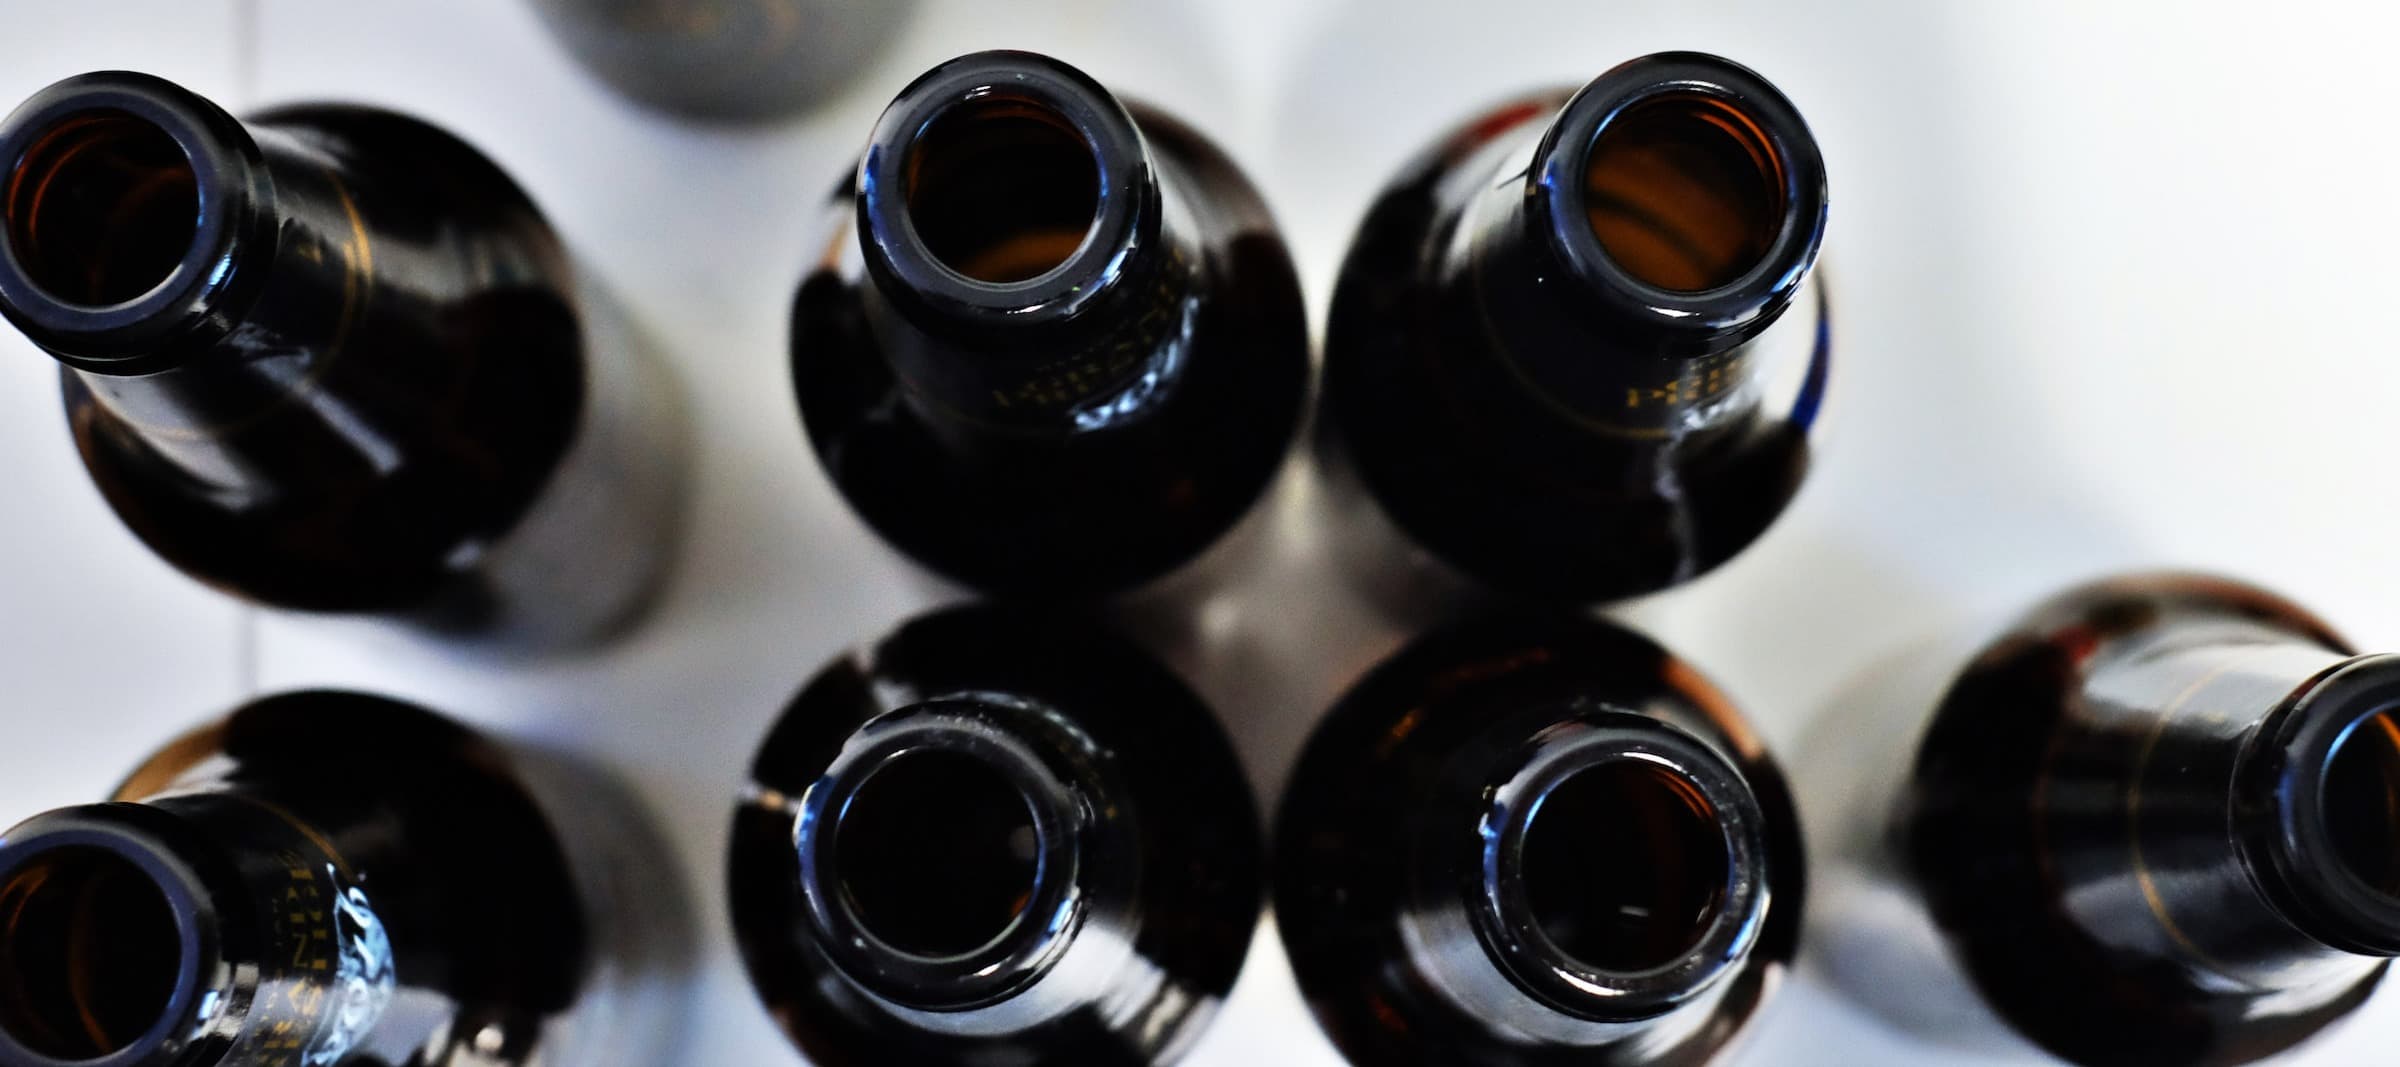 Фото новости: "Ассортимент иностранных марок пива в российских магазинах начал расти"